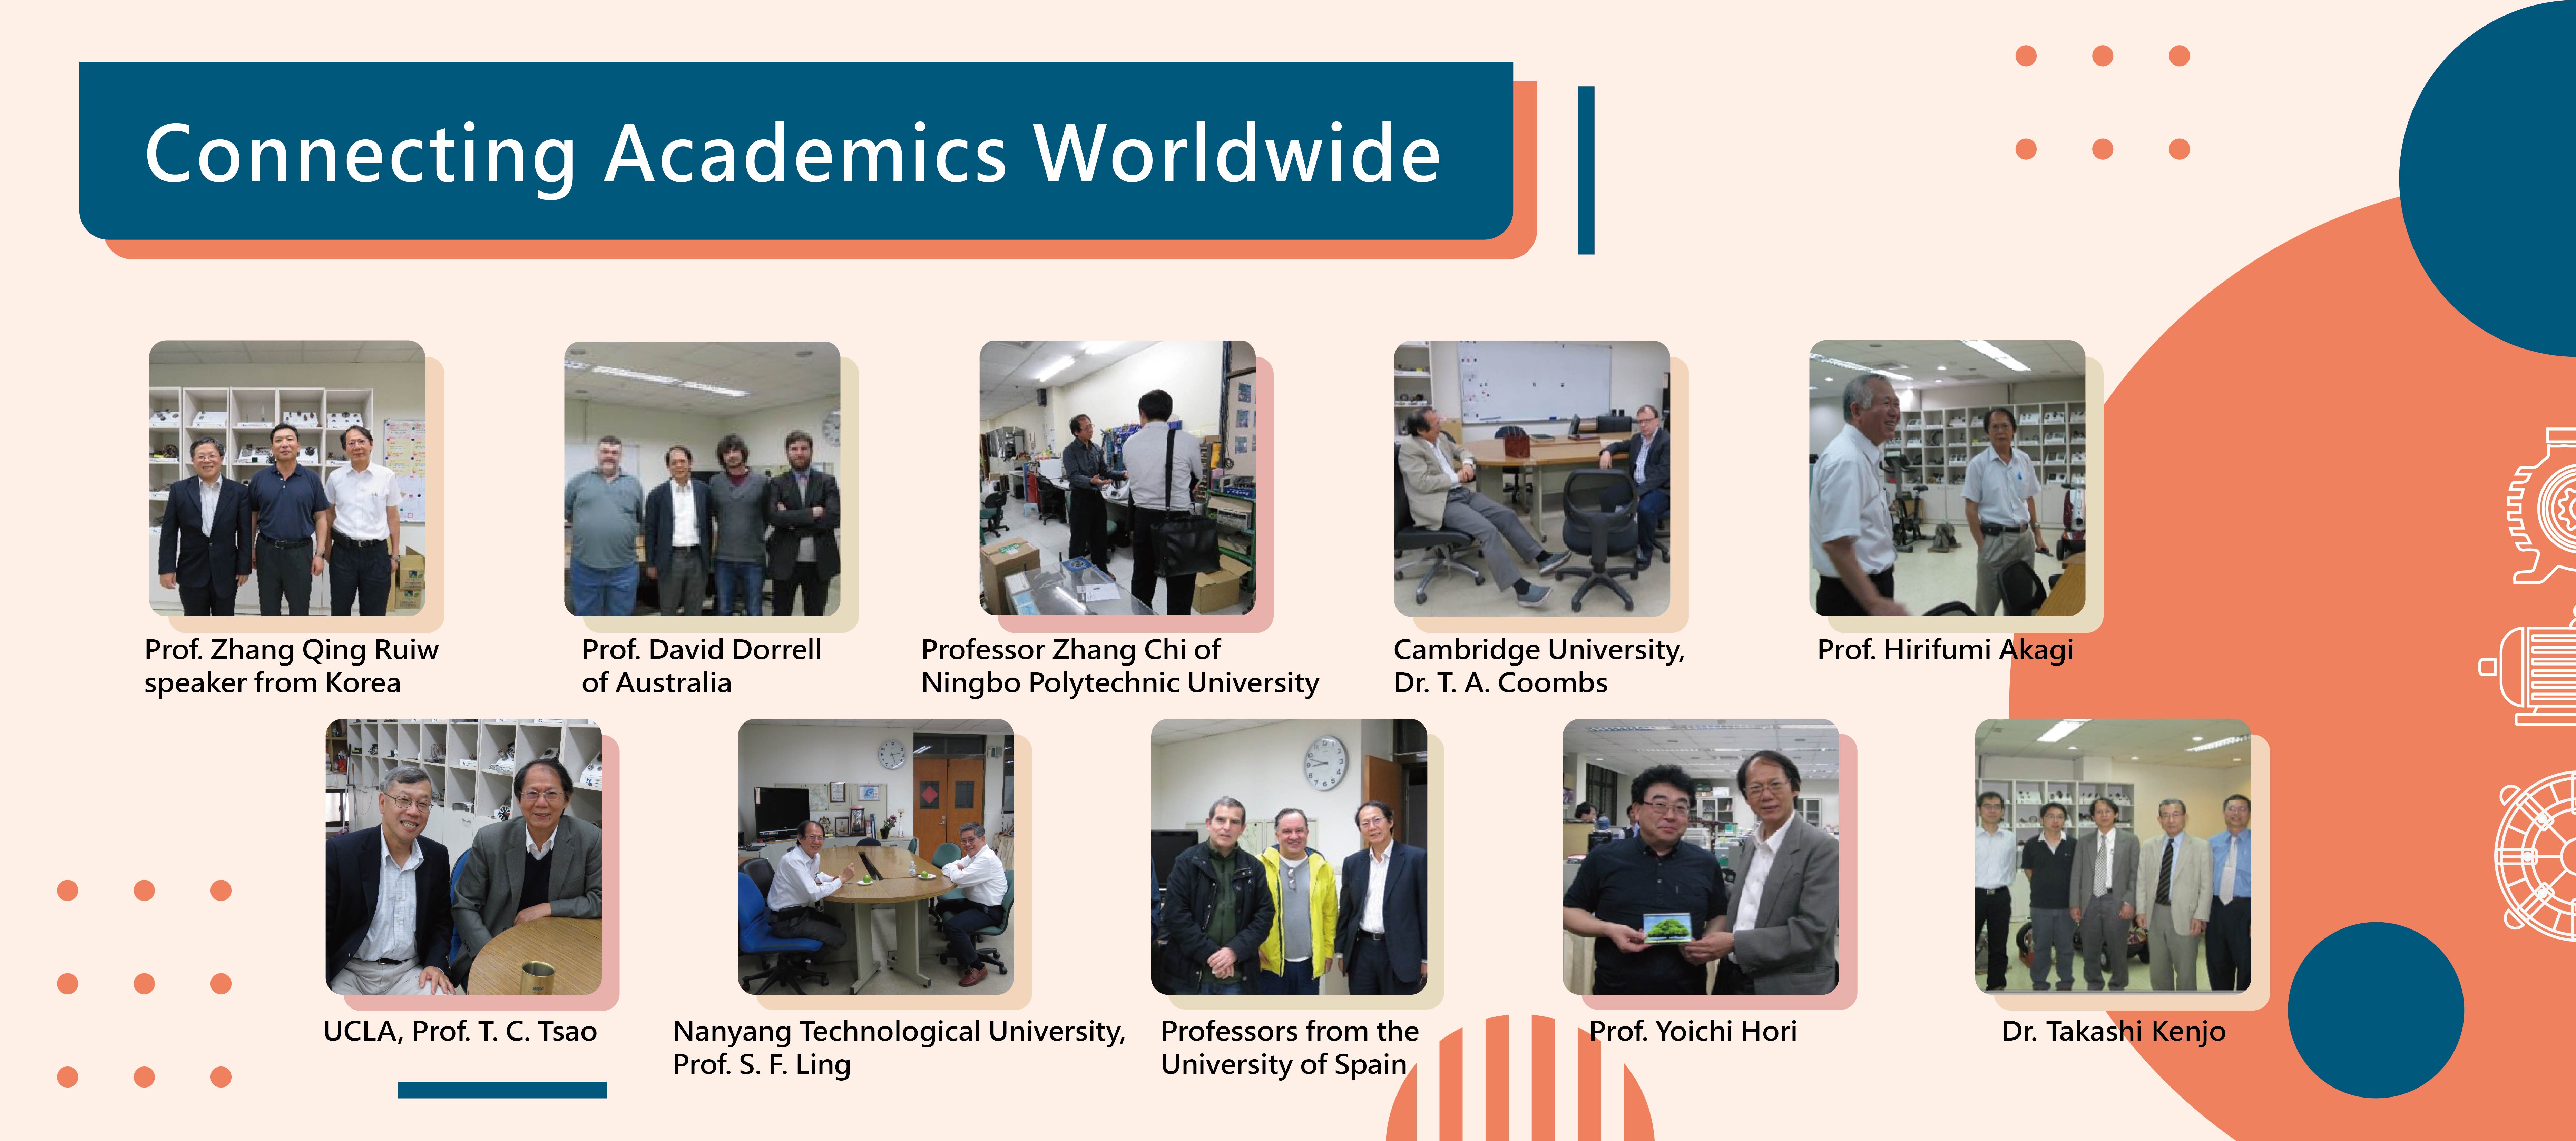 Connecting Academics Worldwide